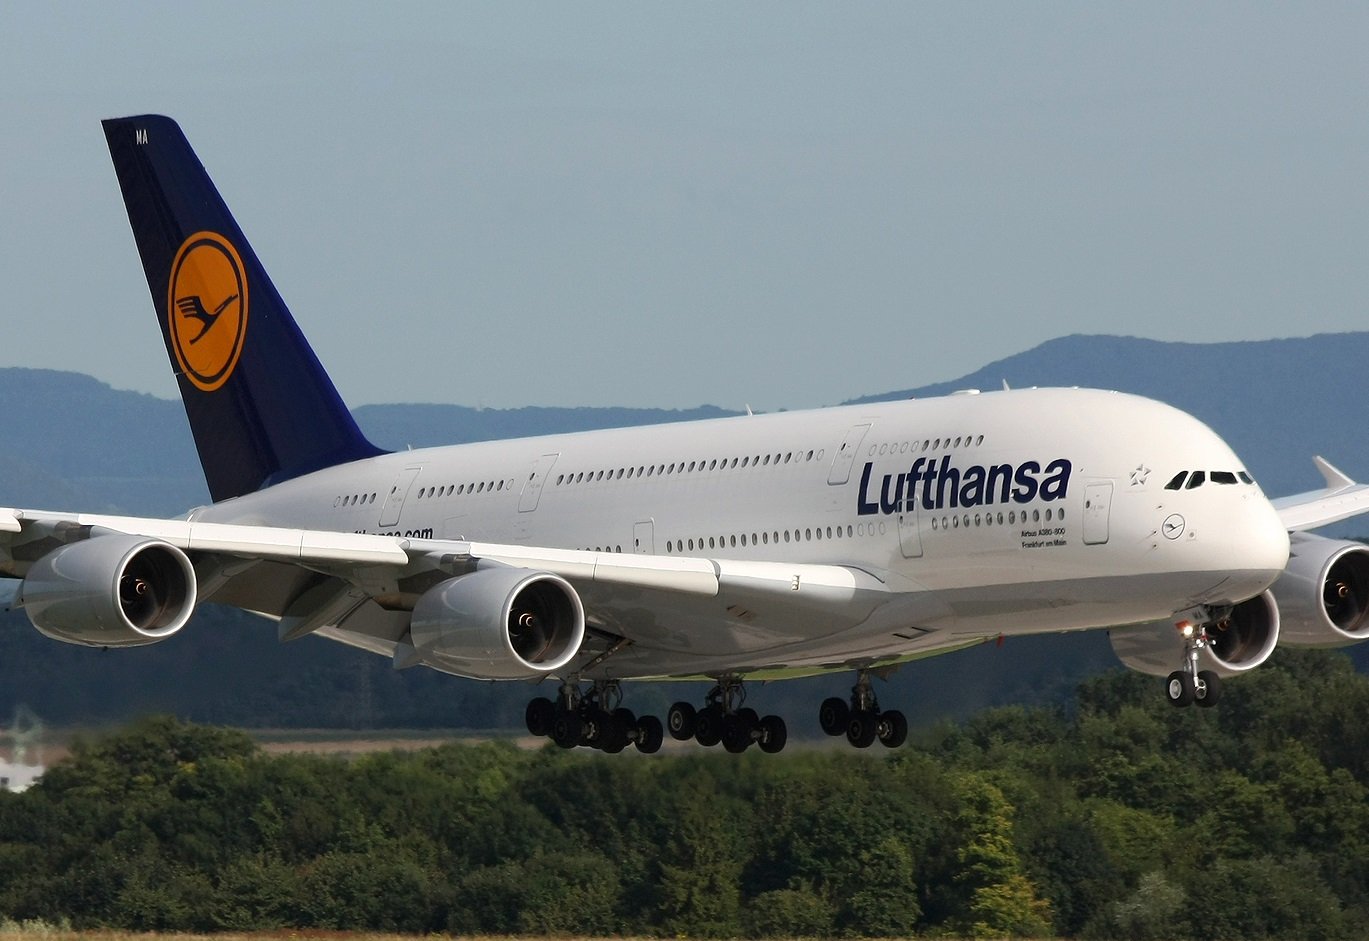 Lufthansa ավիաընկերությունը երկարատև դադարից հետո վերադառնում է Հայաստան